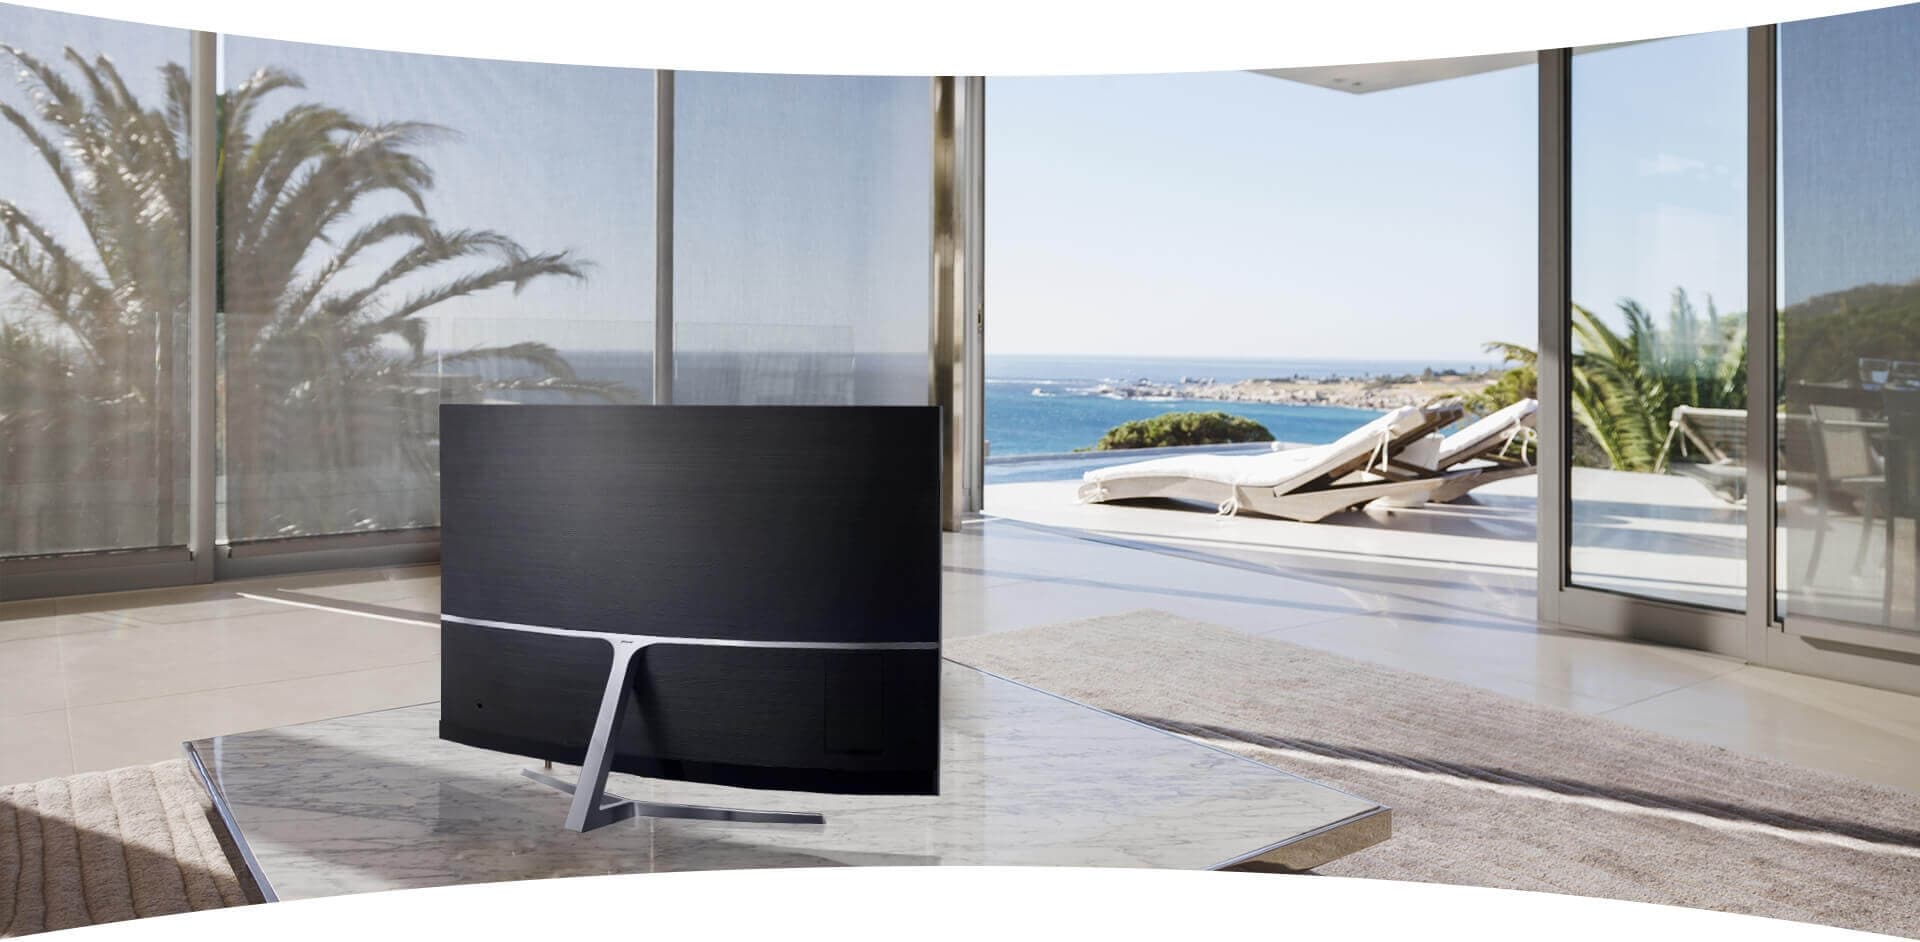 Un TV de Samsung está en medio de una sala en la que aparece como un mueble destacado.